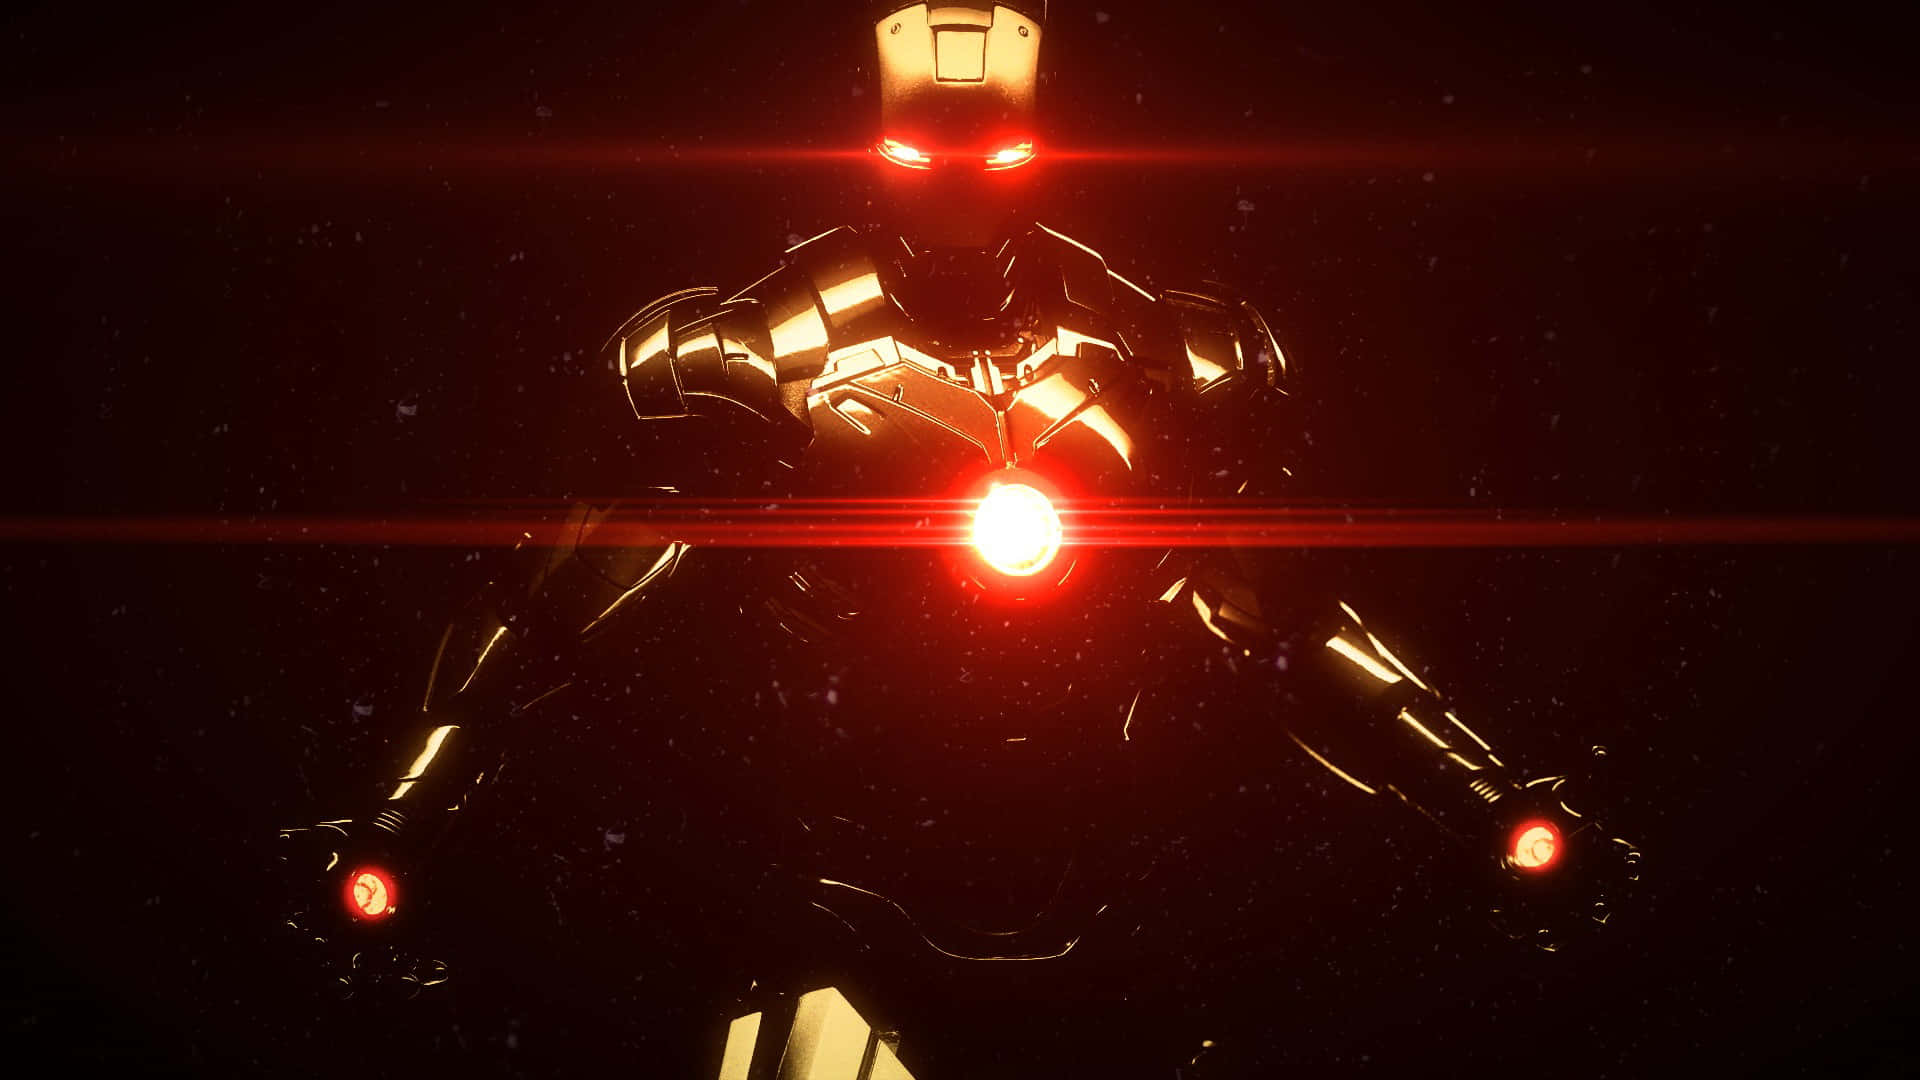 Iron Man i mørket med en rød lys der skinner